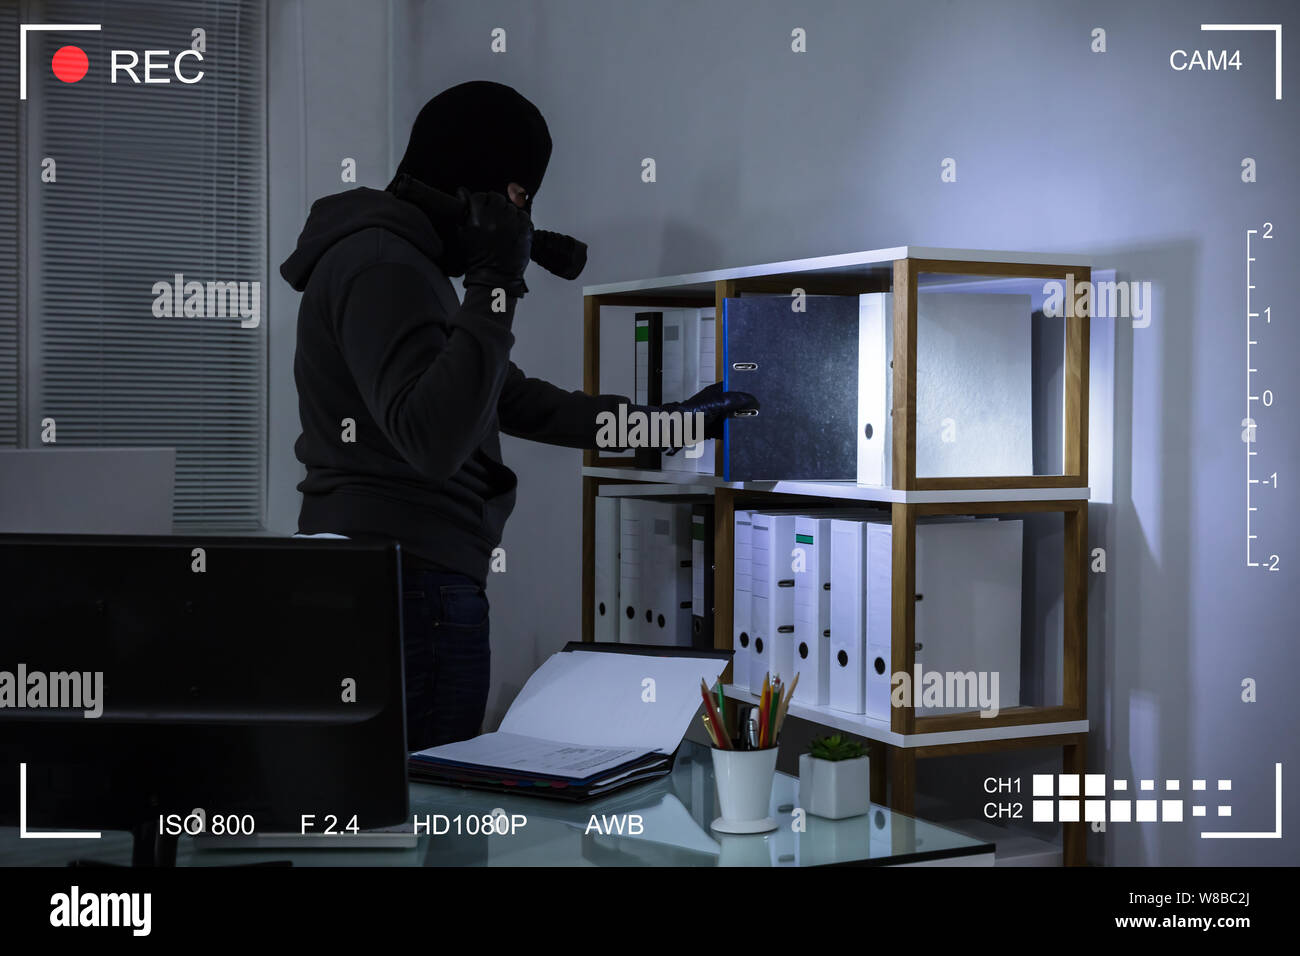 Ladro indossando passamontagna rubare file da scaffale in scena sul luogo di lavoro attraverso la telecamera TVCC Foto Stock